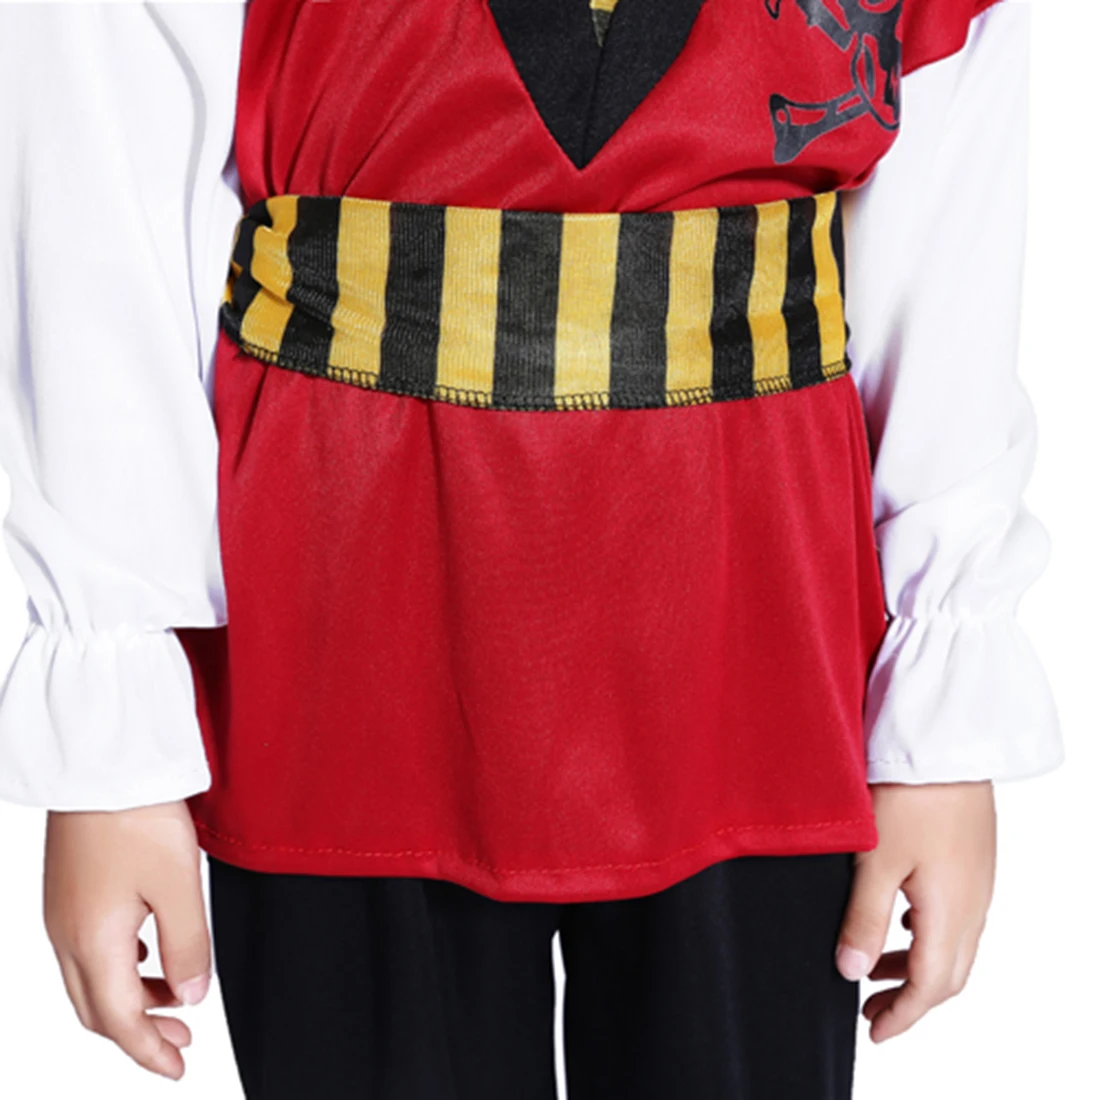 Костюм пирата на Хэллоуин для косплея костюм пирата с красным черепом для мальчиков, комплект с пиратским бластером для От 4 до 6 лет-М